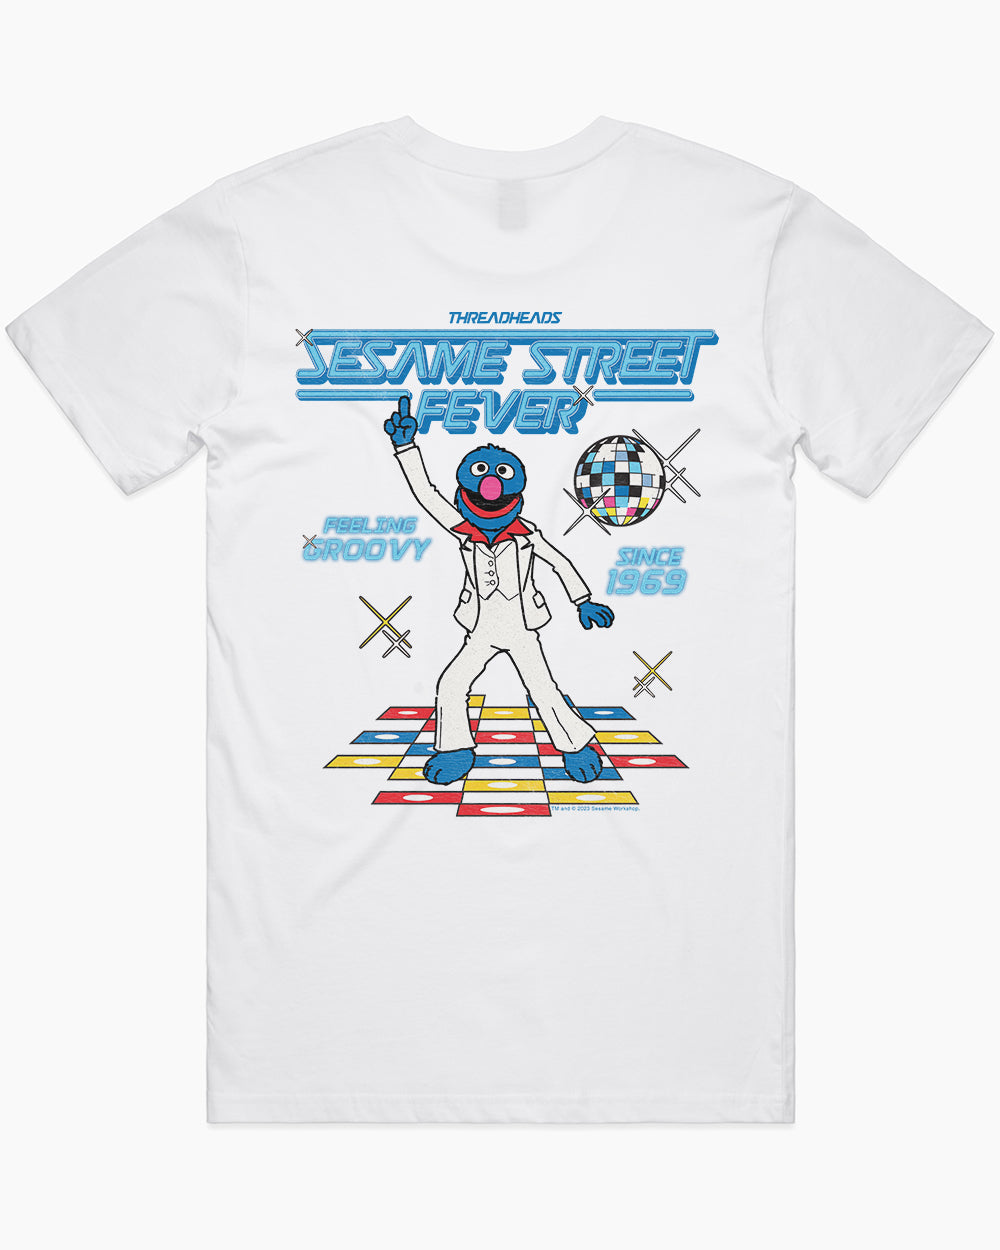 Sesame Street Fever T-Shirt Australia Online #colour_white